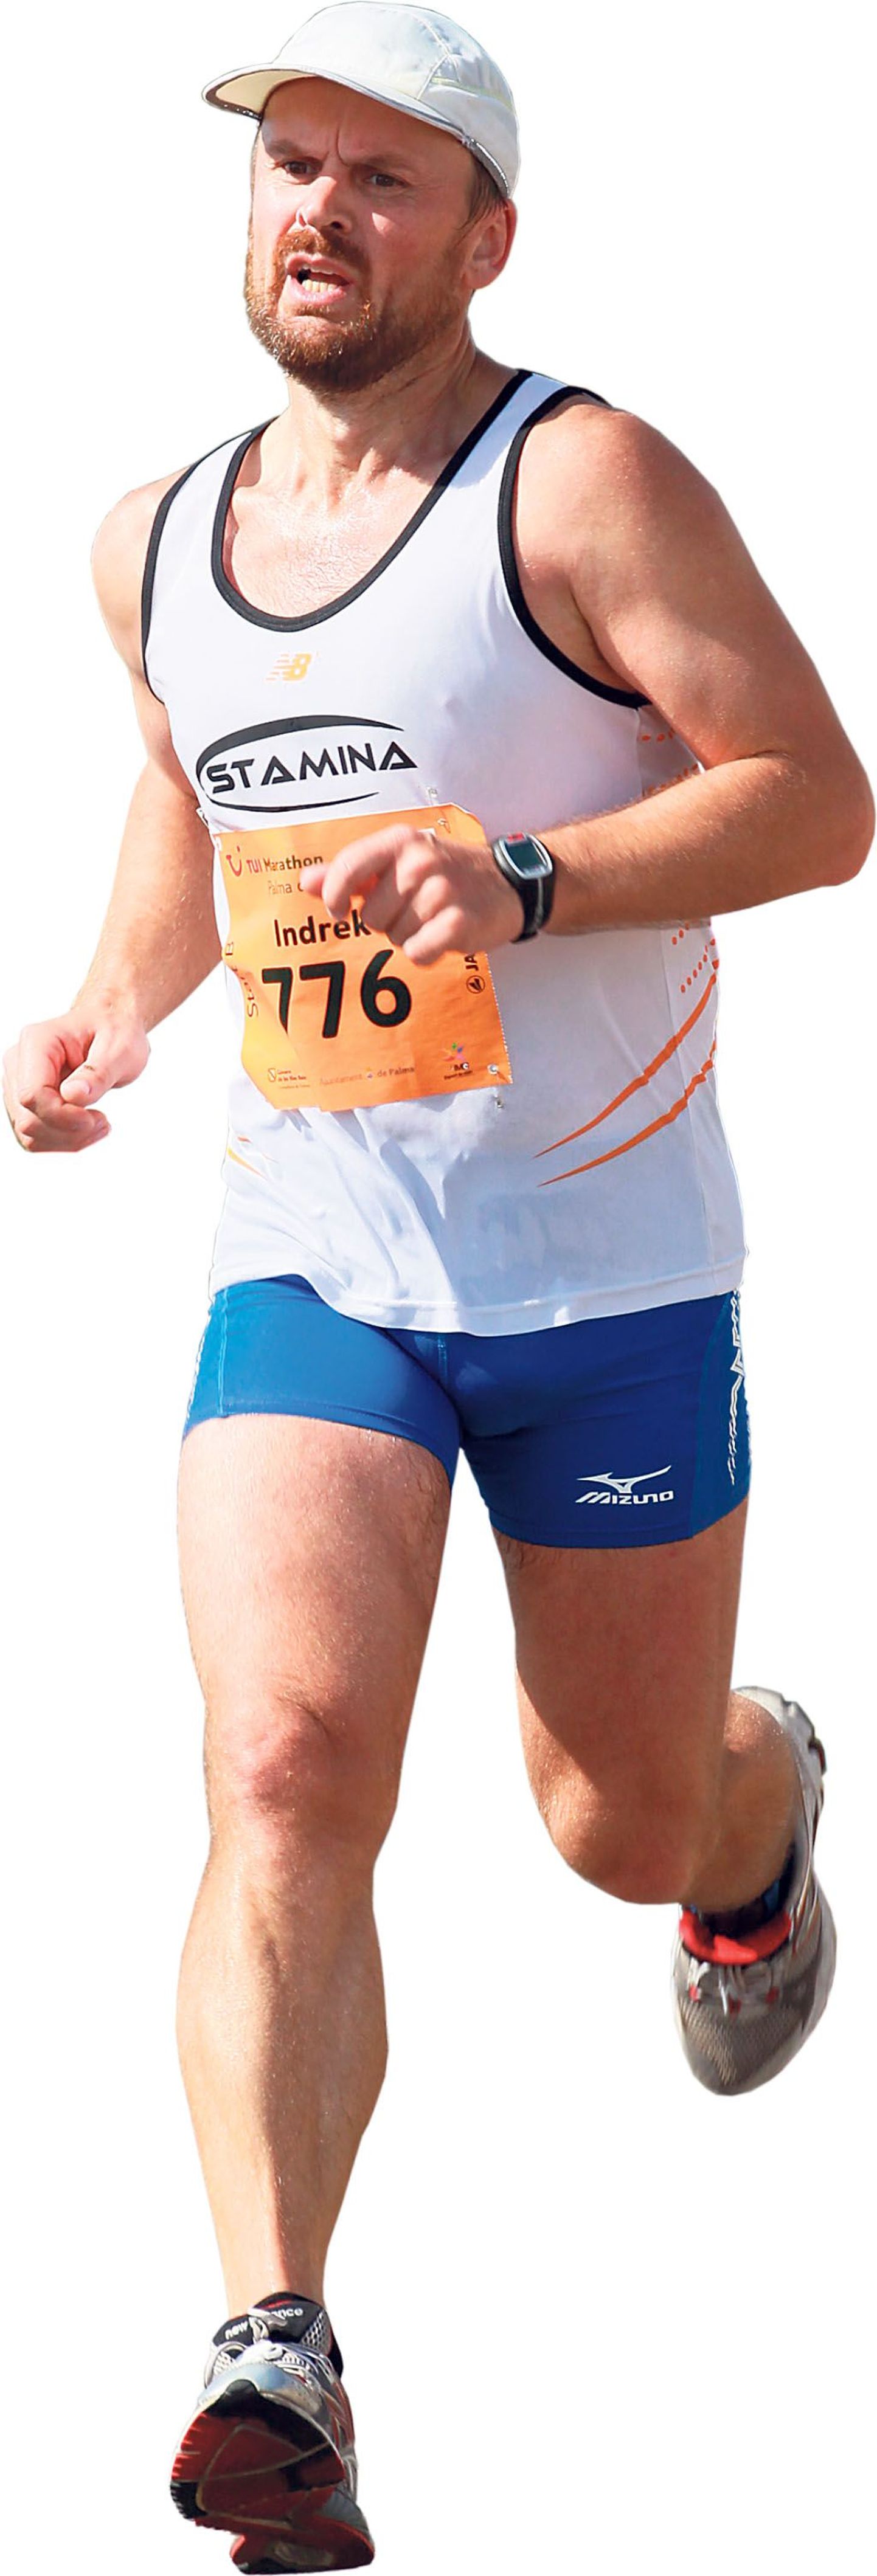 Indrek Jürgenstein läbis tänavuse Mallorca maratoni kolme tunni ja 48 minutiga. Tegu oli tema teise maratoniga, millel mees jooksis tõusvas joones, ehk ta läbis distantsi teise poole esimesest kiiremini.